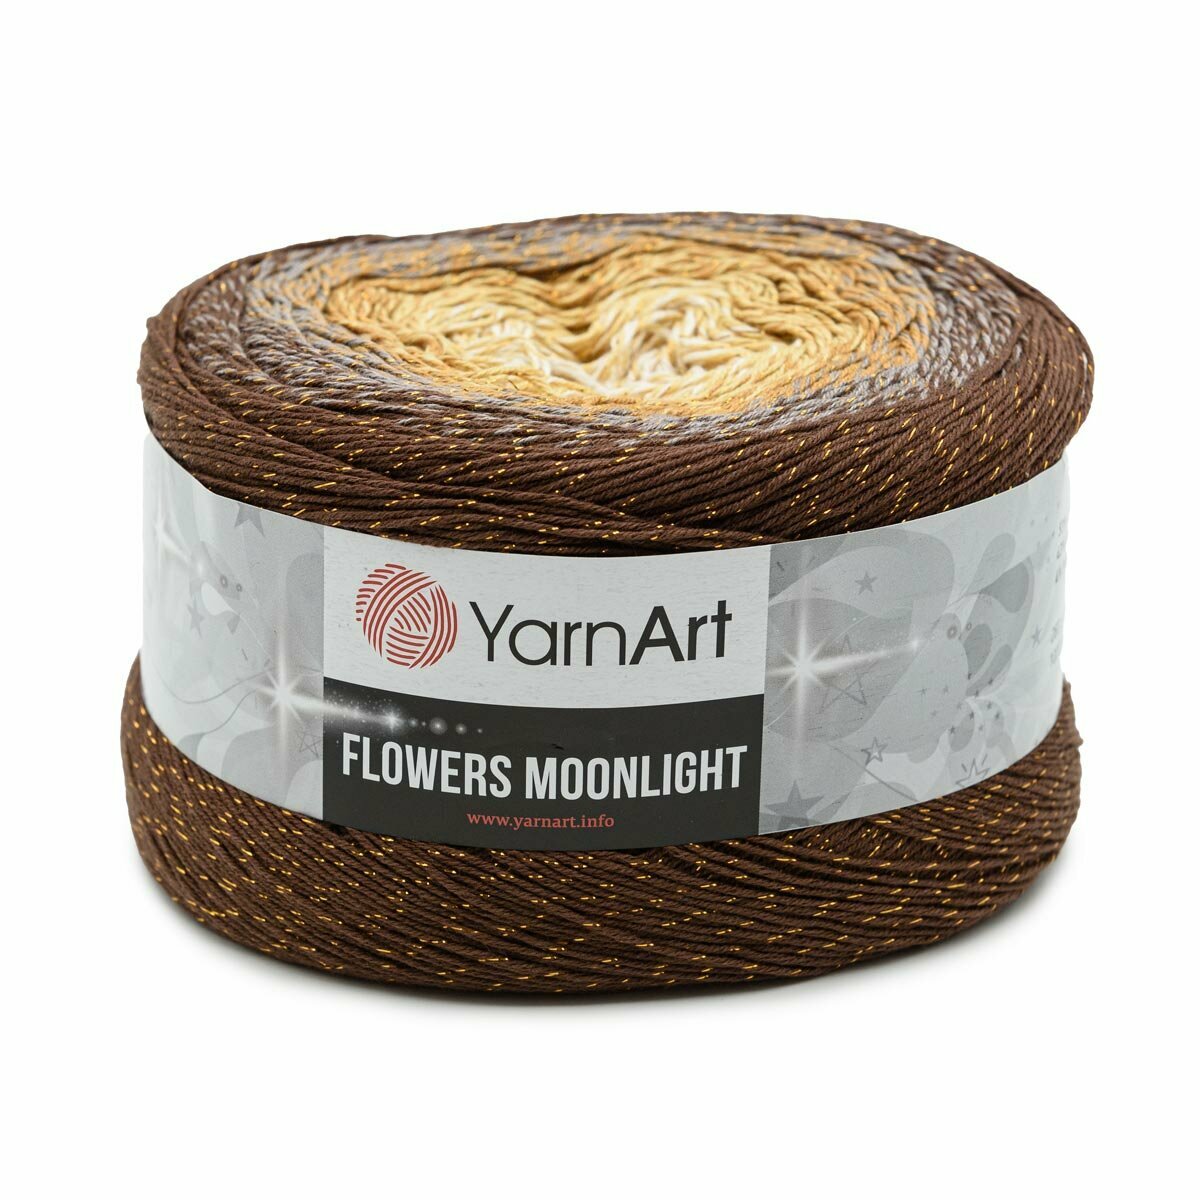 Пряжа для вязания YarnArt 'Flowers Moonlight' 260гр 1000м (53% хлопок, 43% полиакрил, 4% металлик) (3284 секционный), 2 мотка